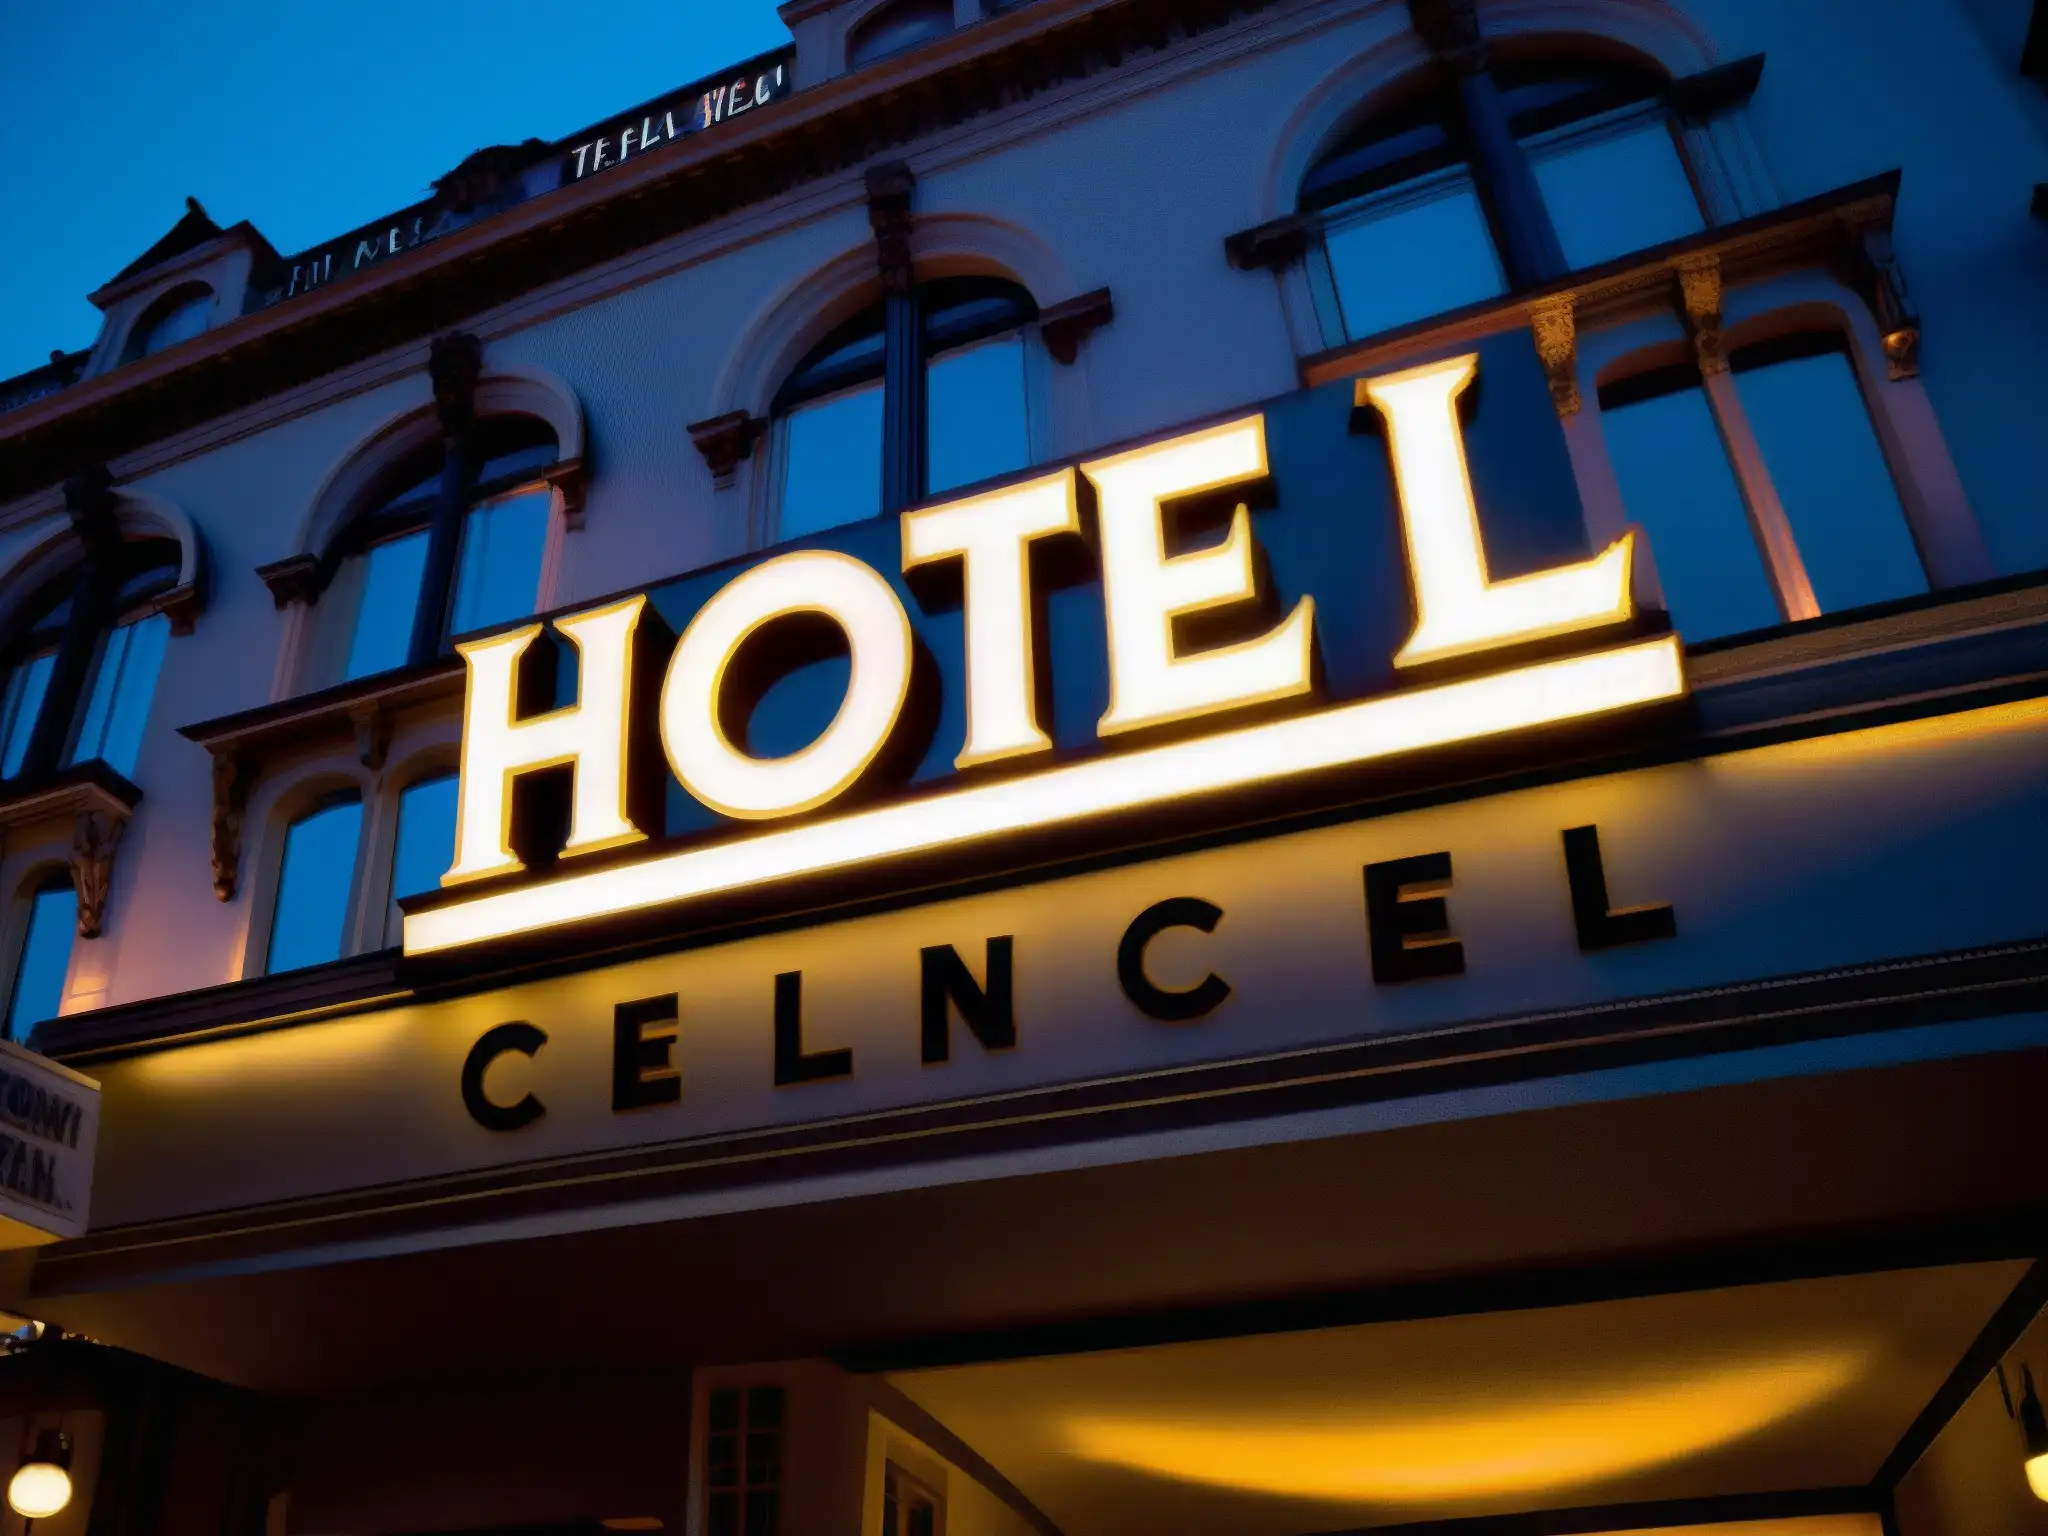 Imagen impactante del Hotel Cecil al anochecer, evocando su historia siniestra con una atmósfera misteriosa y sobrecogedora